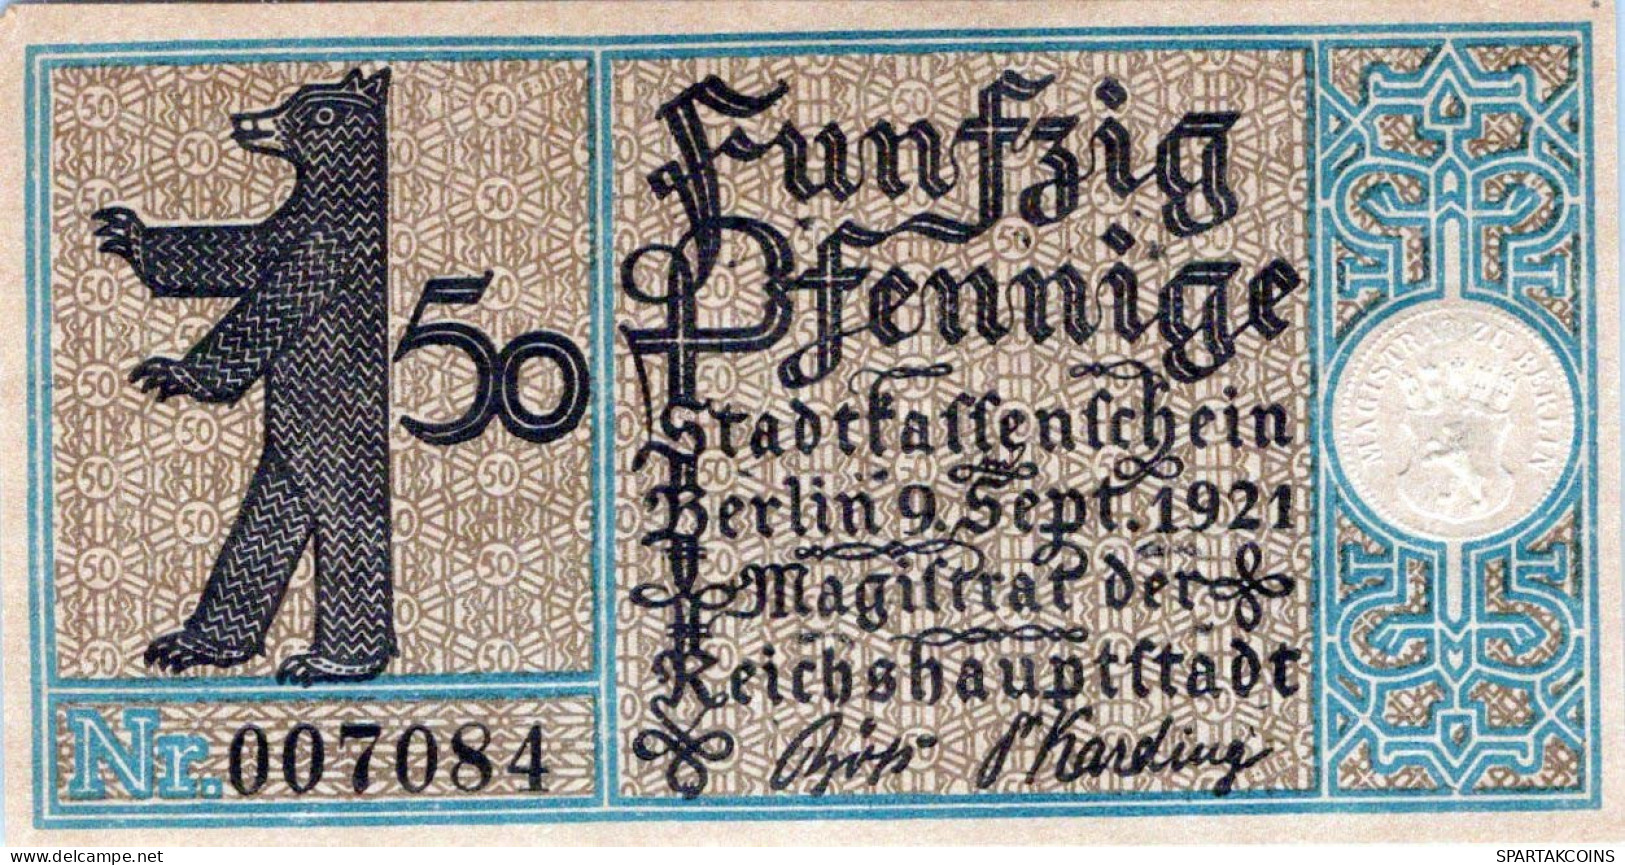 50 PFENNIG 1921 Stadt BERLIN DEUTSCHLAND Notgeld Banknote #PF550 - [11] Emisiones Locales